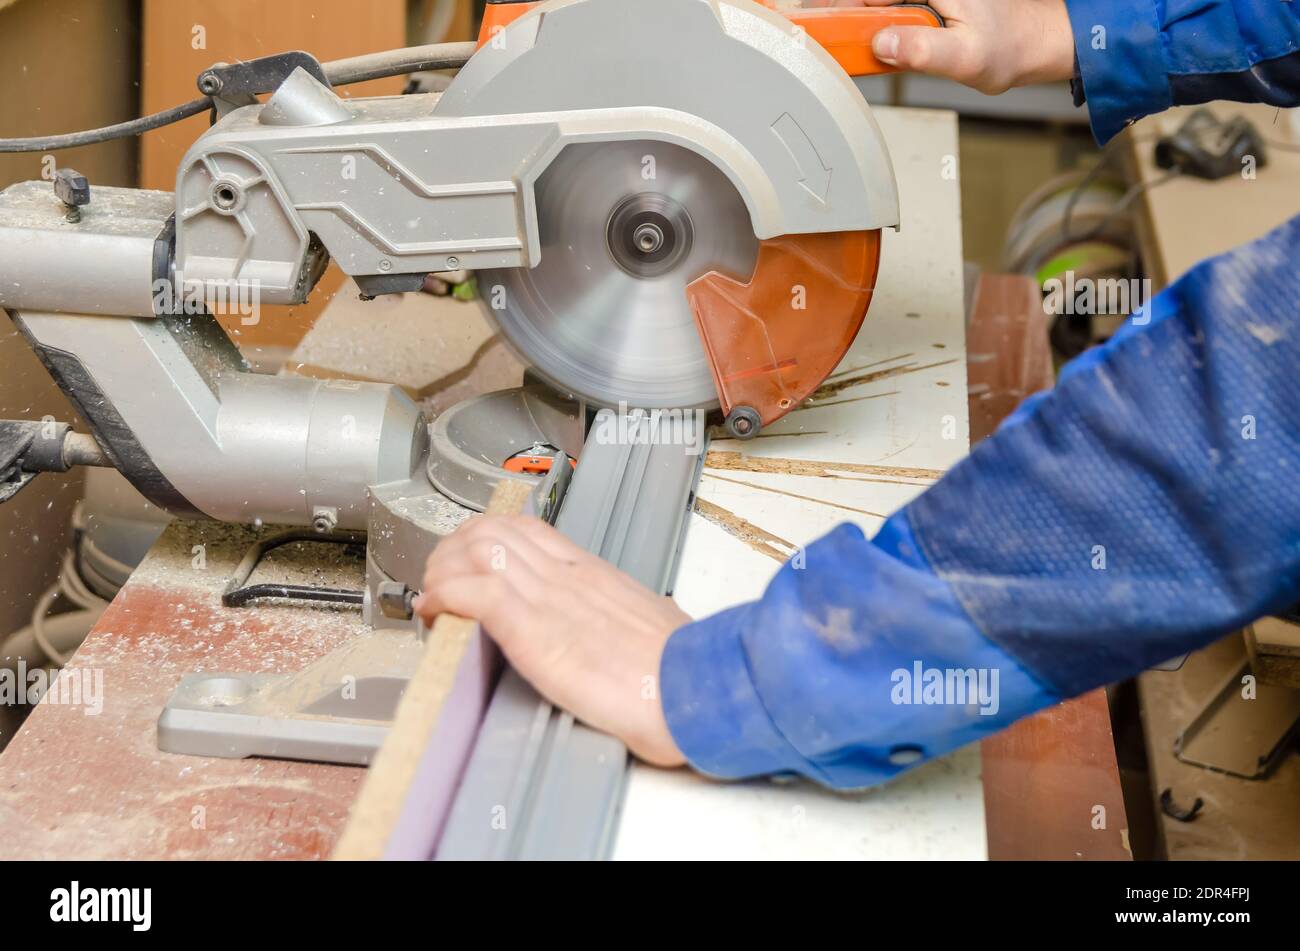 L'employé coupe une partie du cadre métallique à l'aide d'une scie  circulaire pour couper l'aluminium. Sciage de métal. Machine de coupe  abrasive Photo Stock - Alamy